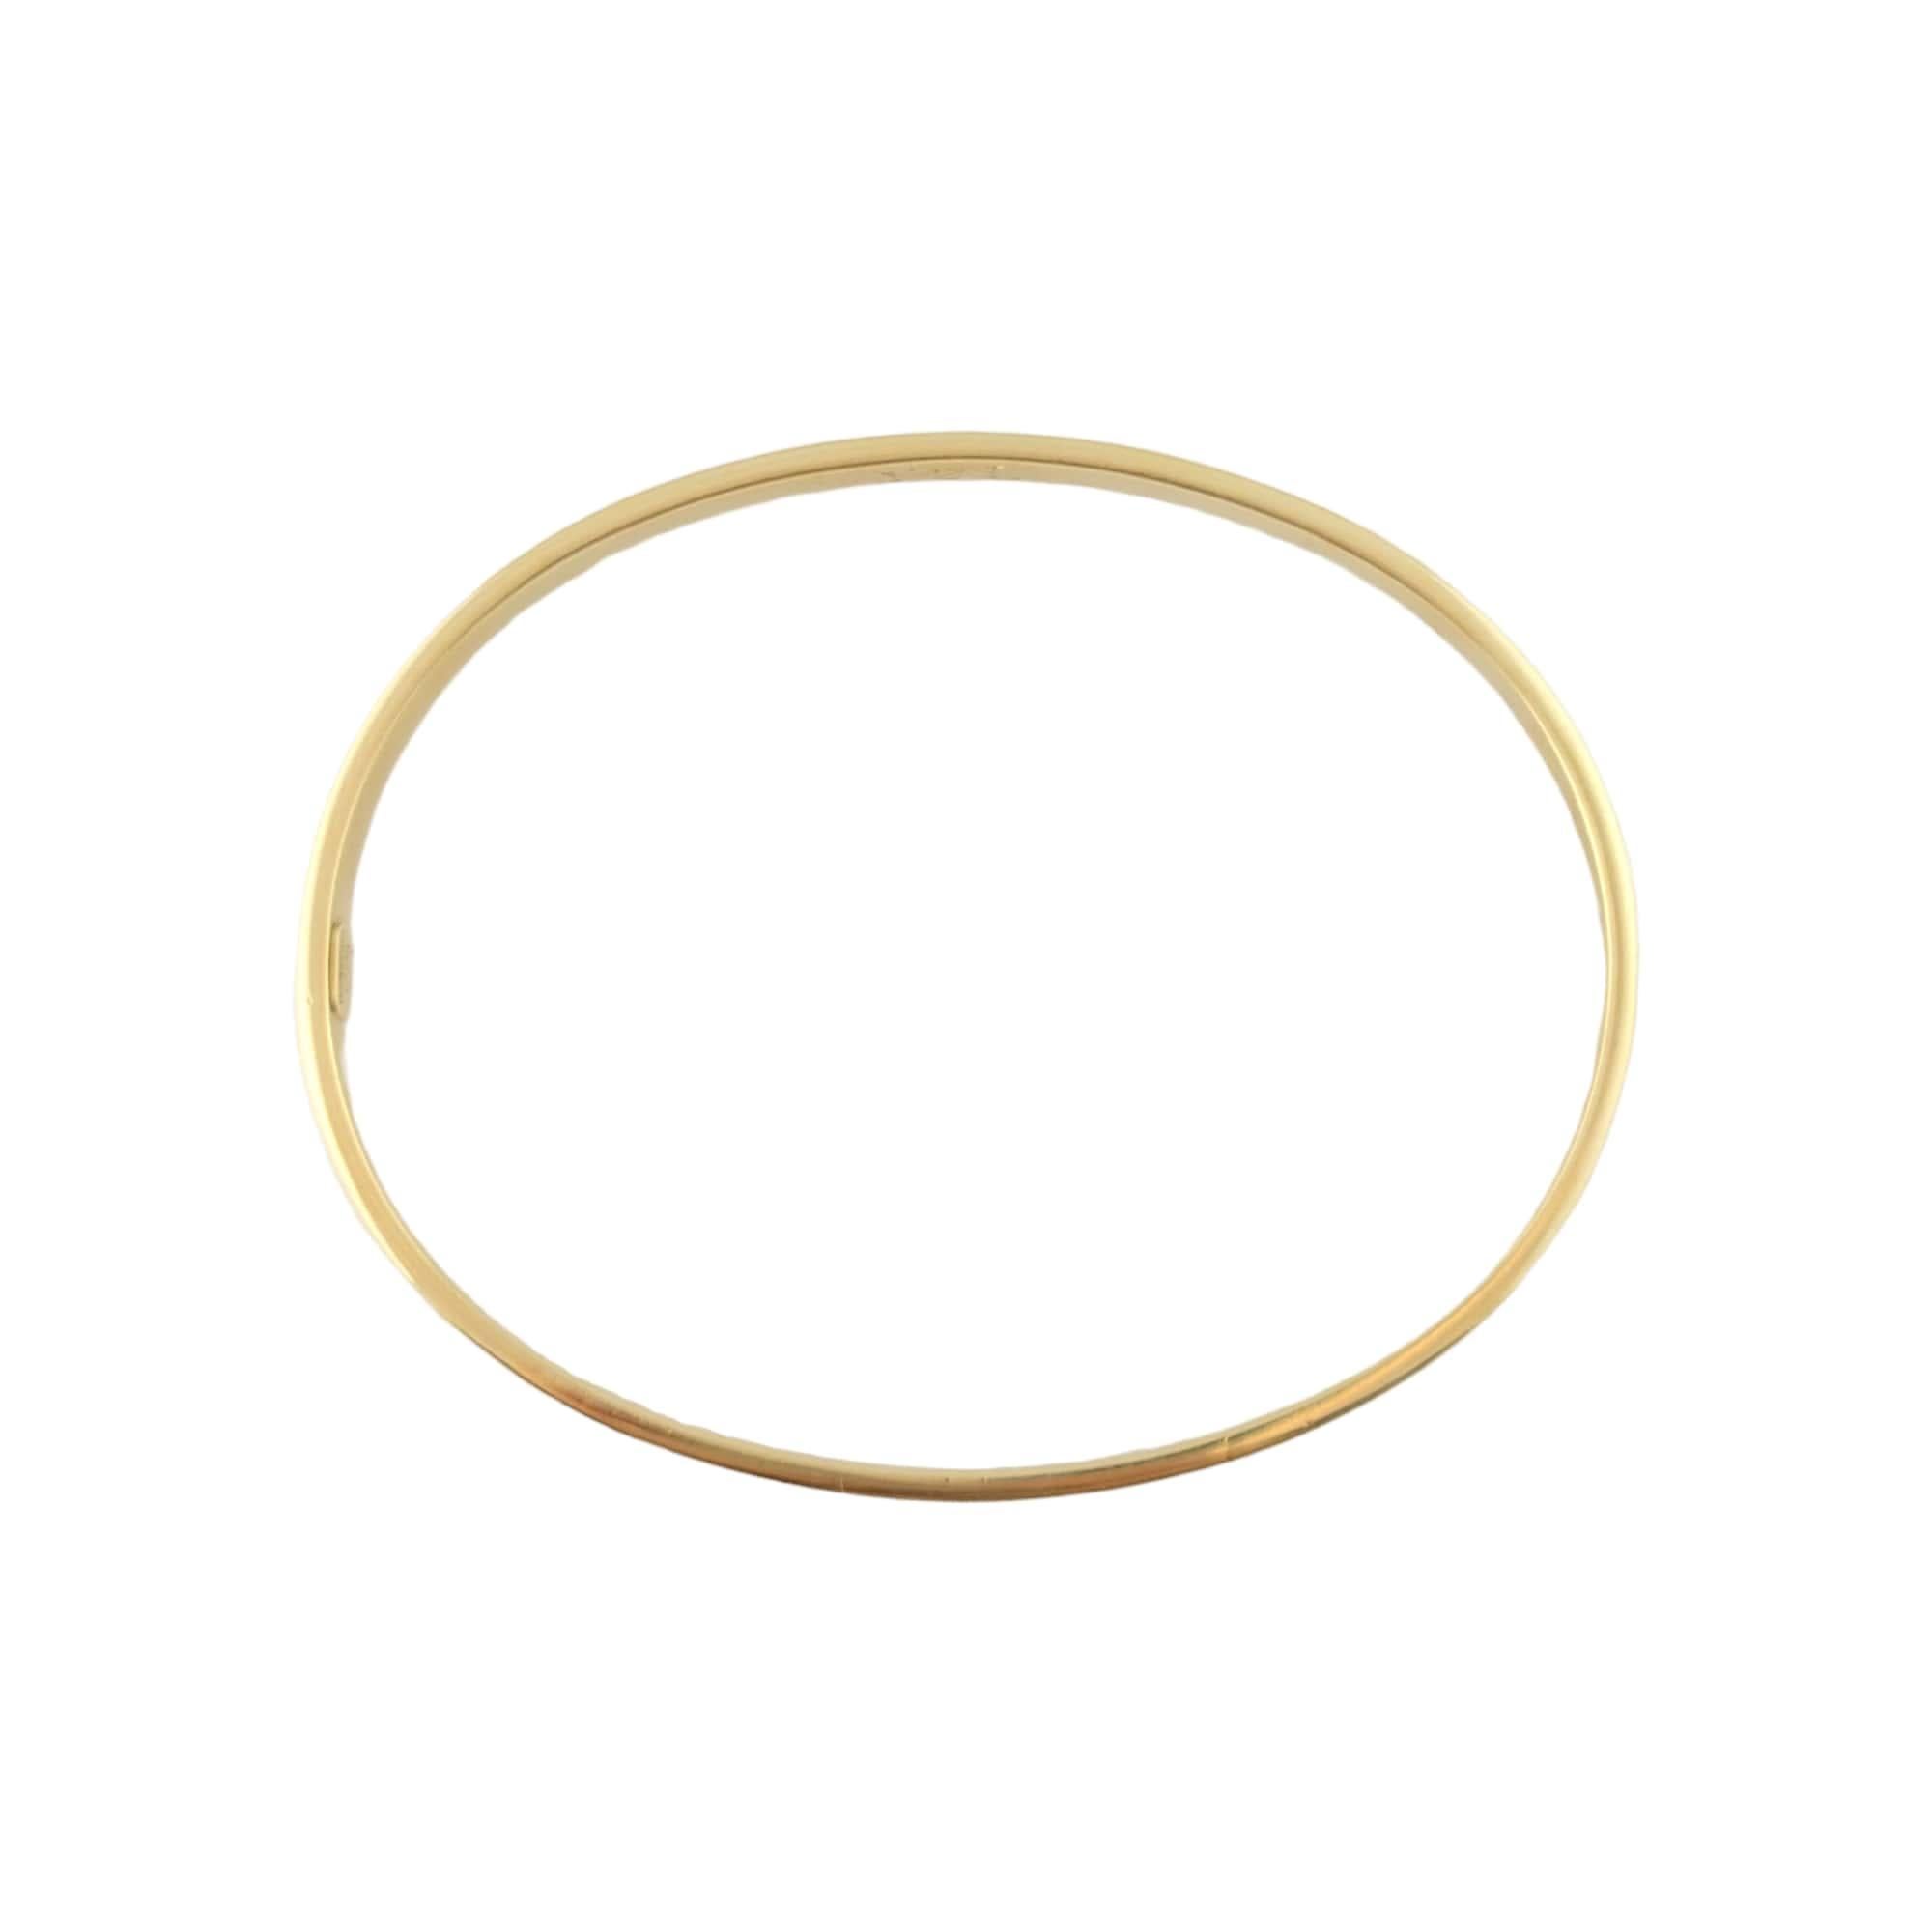 Tiffany & Co. Italy 18K Yellow Gold Oval Bangle Bracelet 2